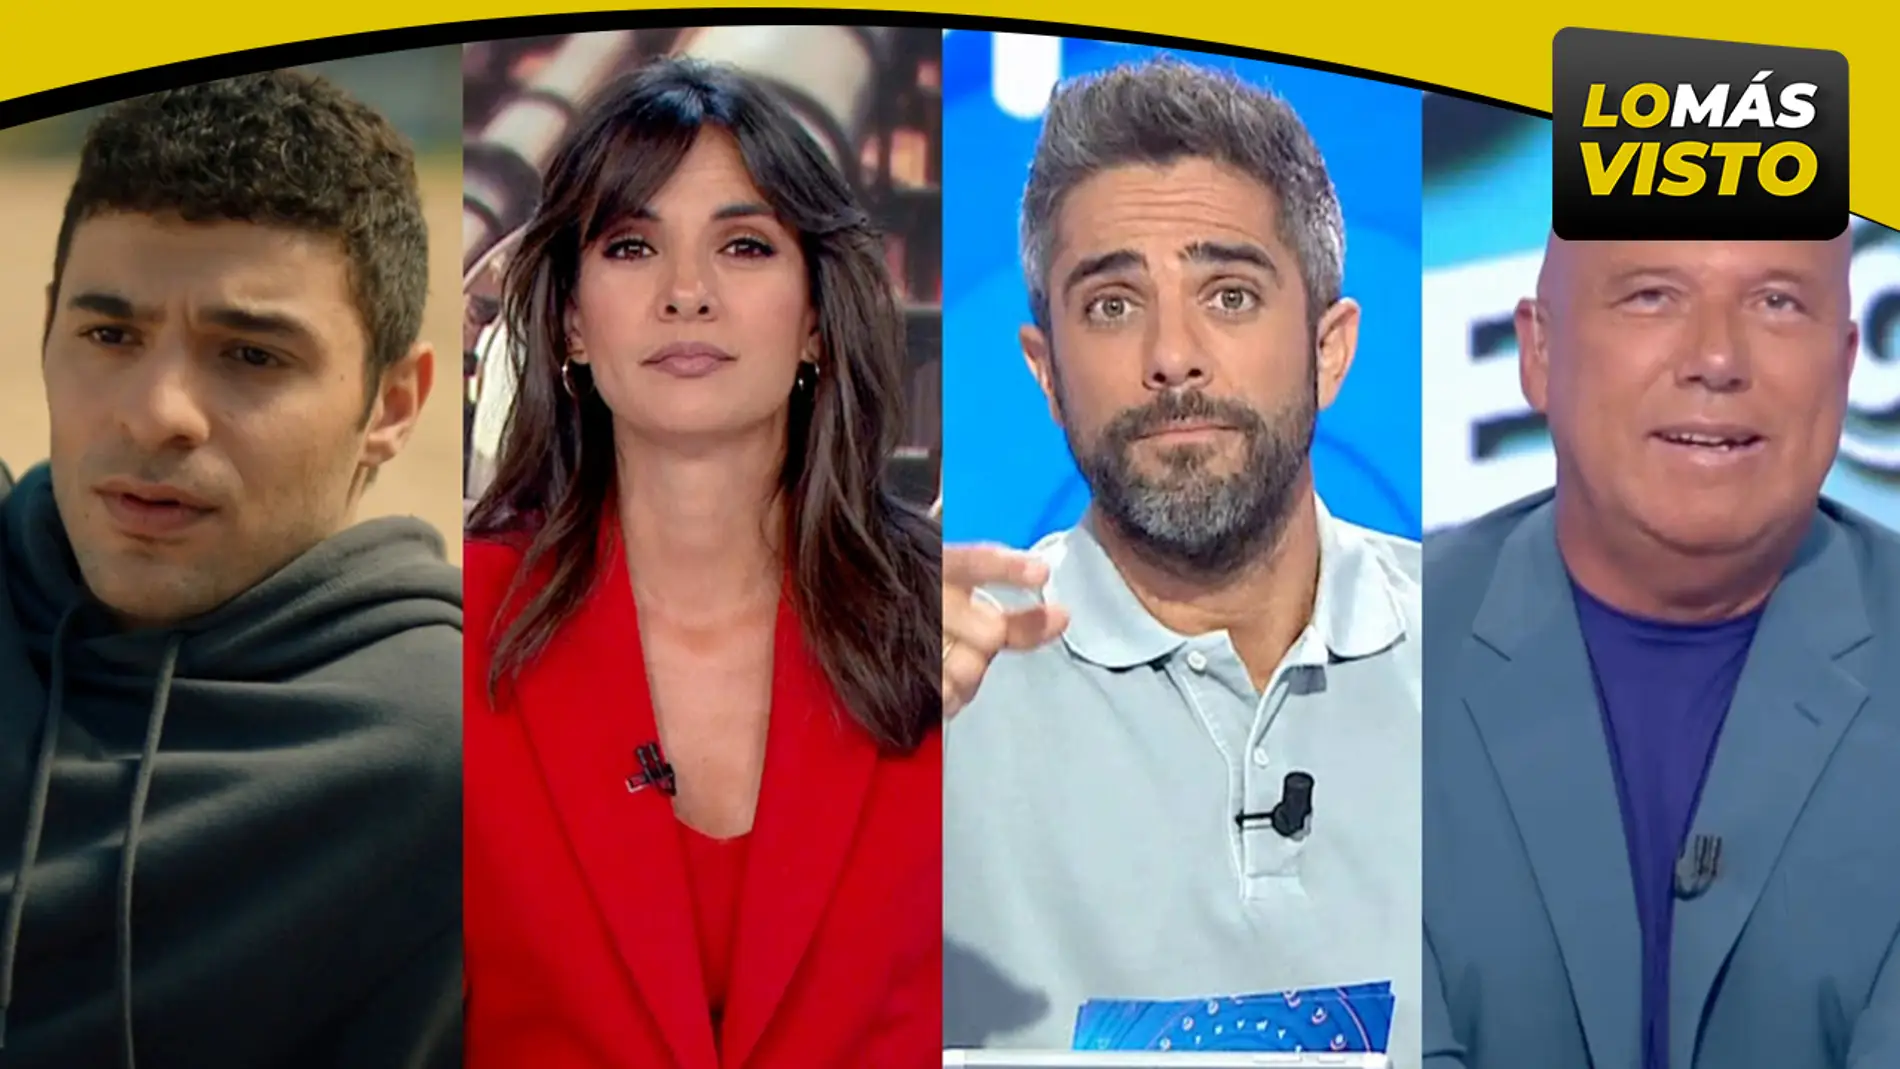 Antena 3, líder del martes, gana de la Mañana al Late Night con lo más visto de la TV y &#39;Hermanos&#39;, sin rival. &#39;Aruser@s&#39; sube y repite liderazgo 